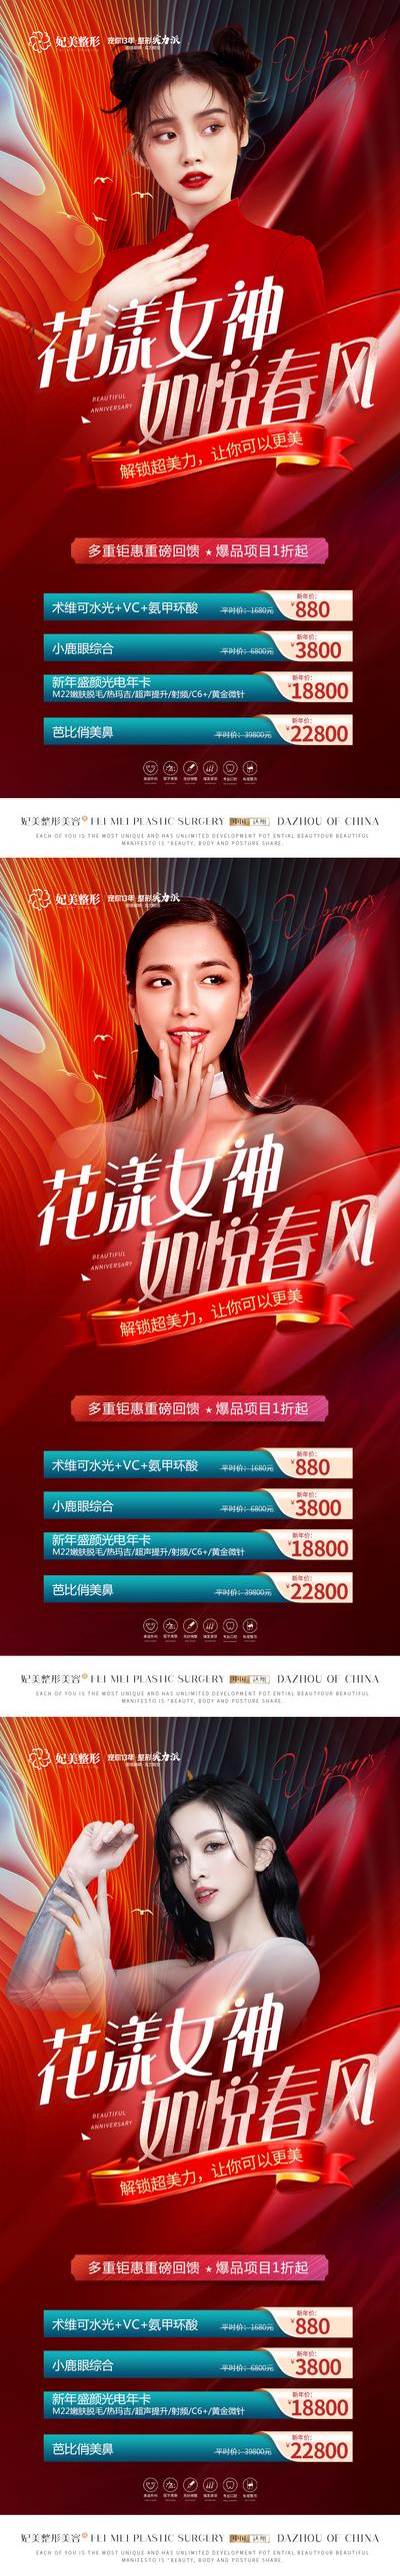 南门网 海报 医美 整形 公历节日 38 妇女节 女神节 卡项 促销 人物 红色 质感